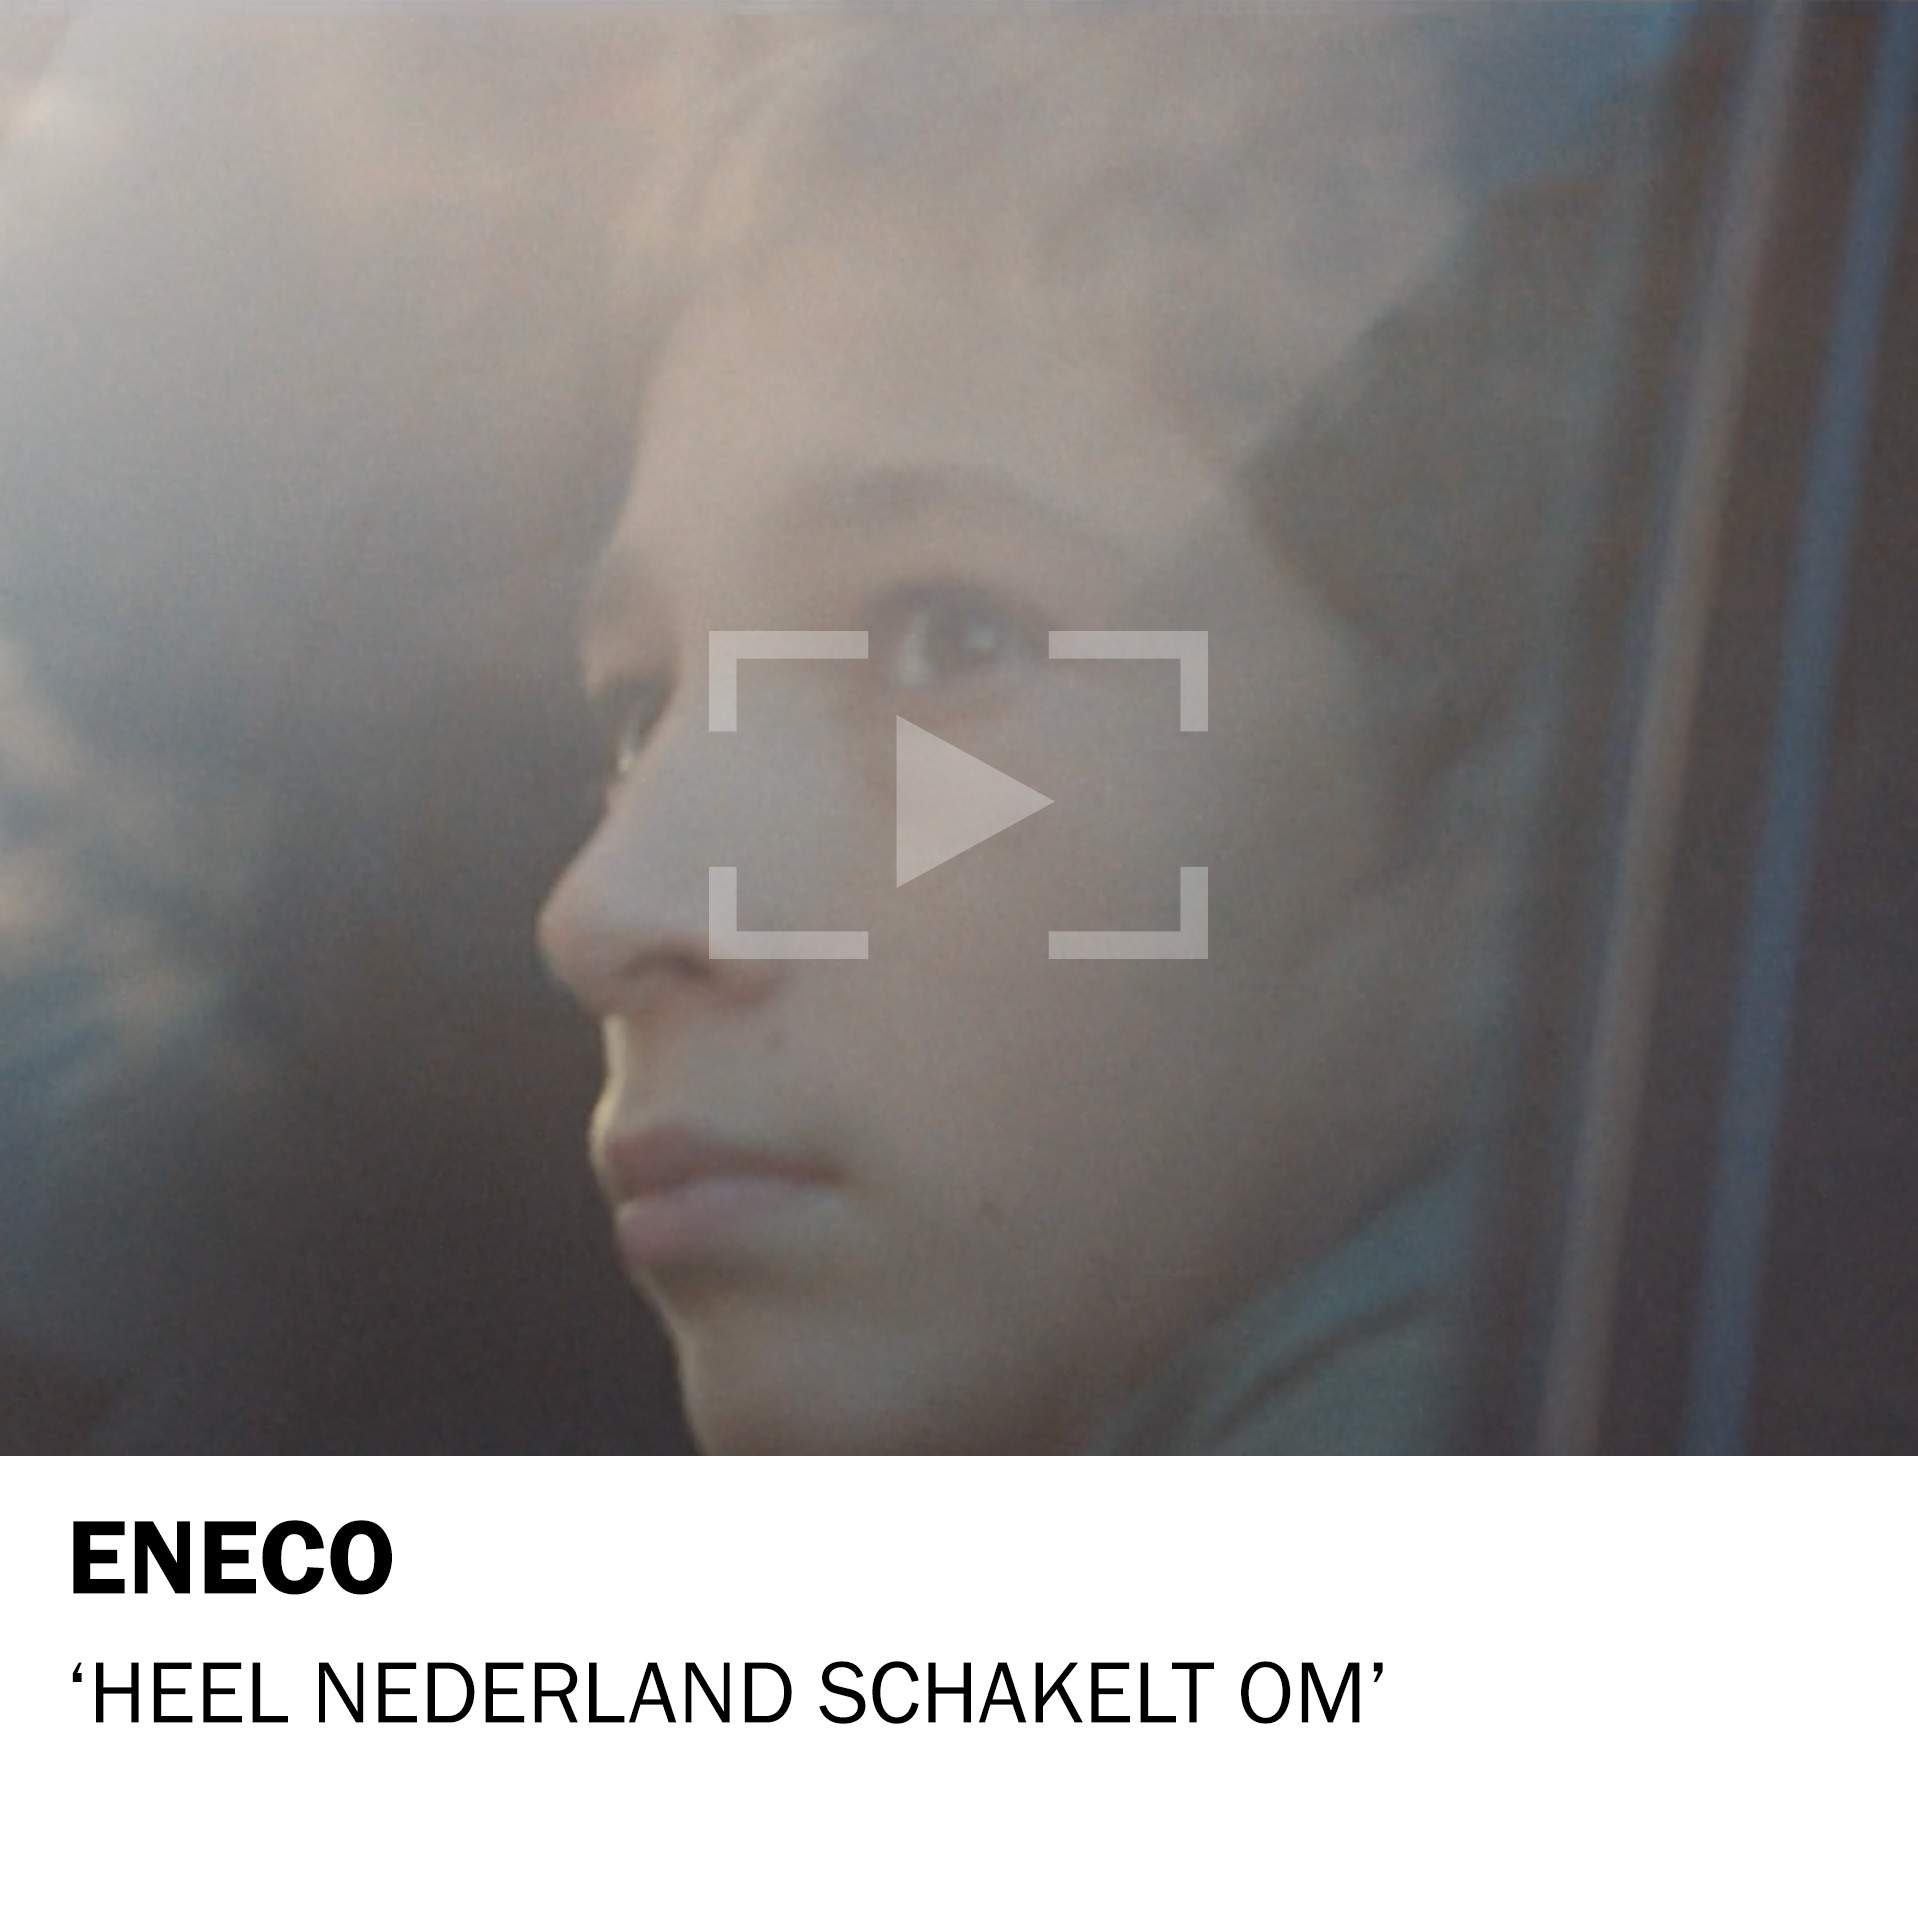 ENECO – Heel Nederland schakelt om